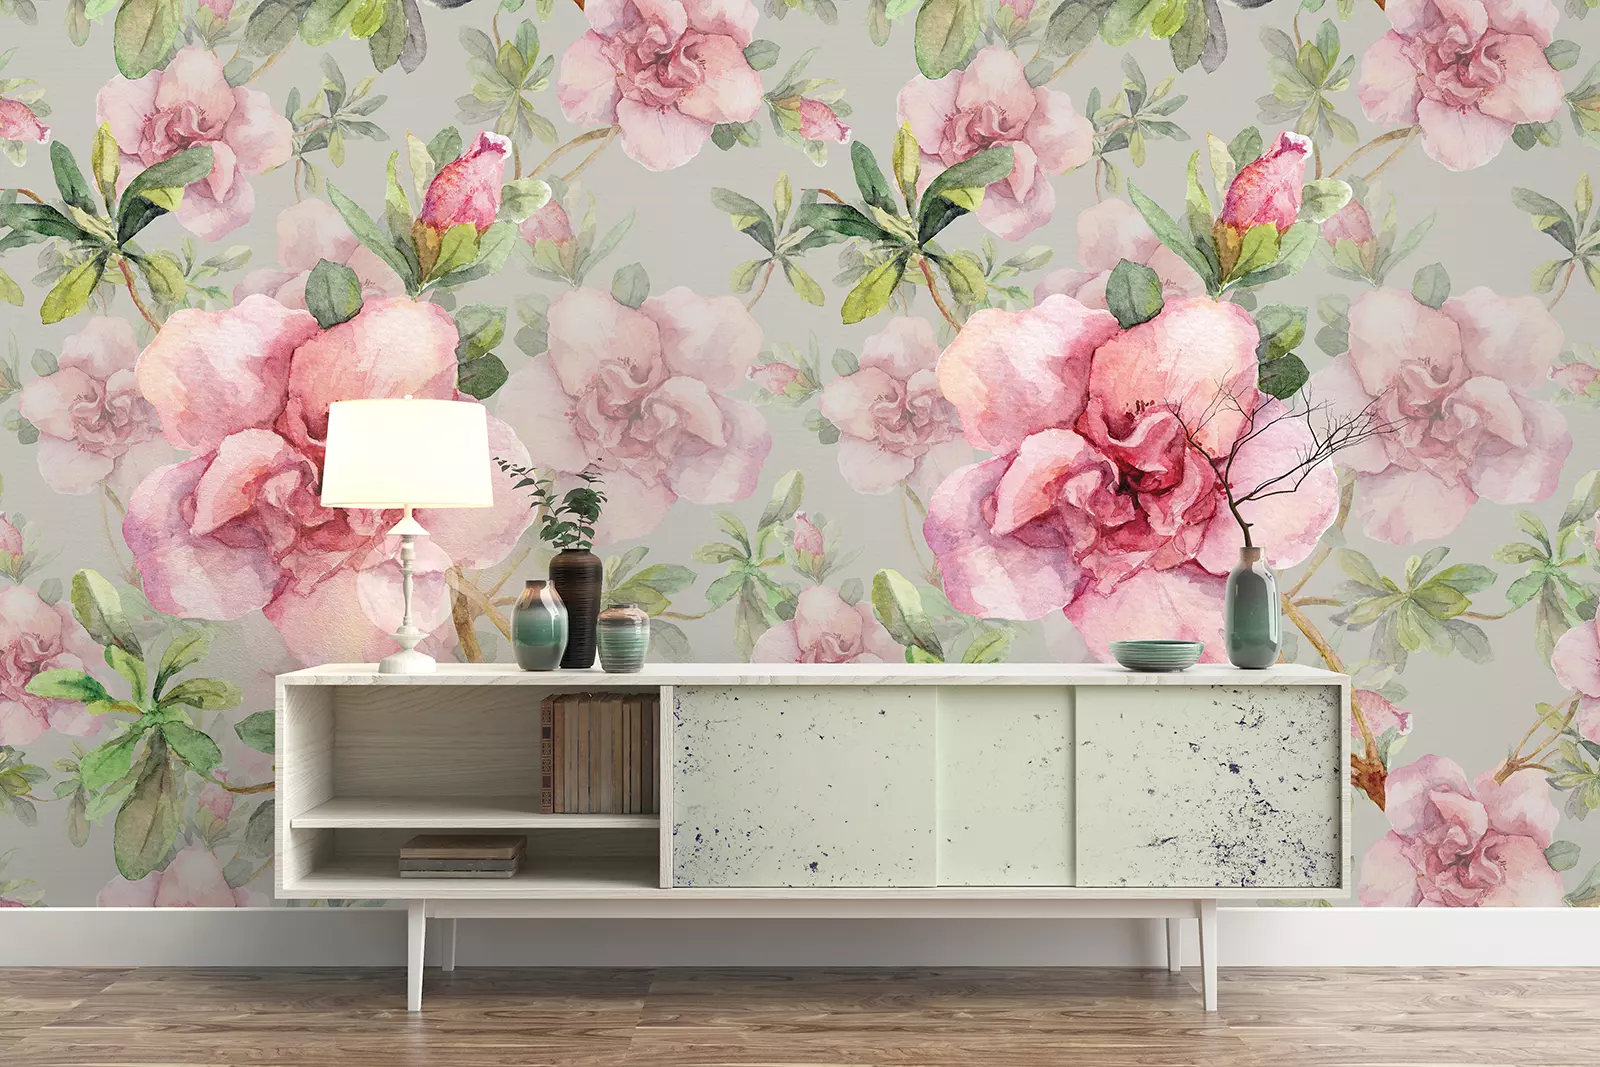 PINK AQUARELLE – Merawalaprint - Flowers Wallpaper